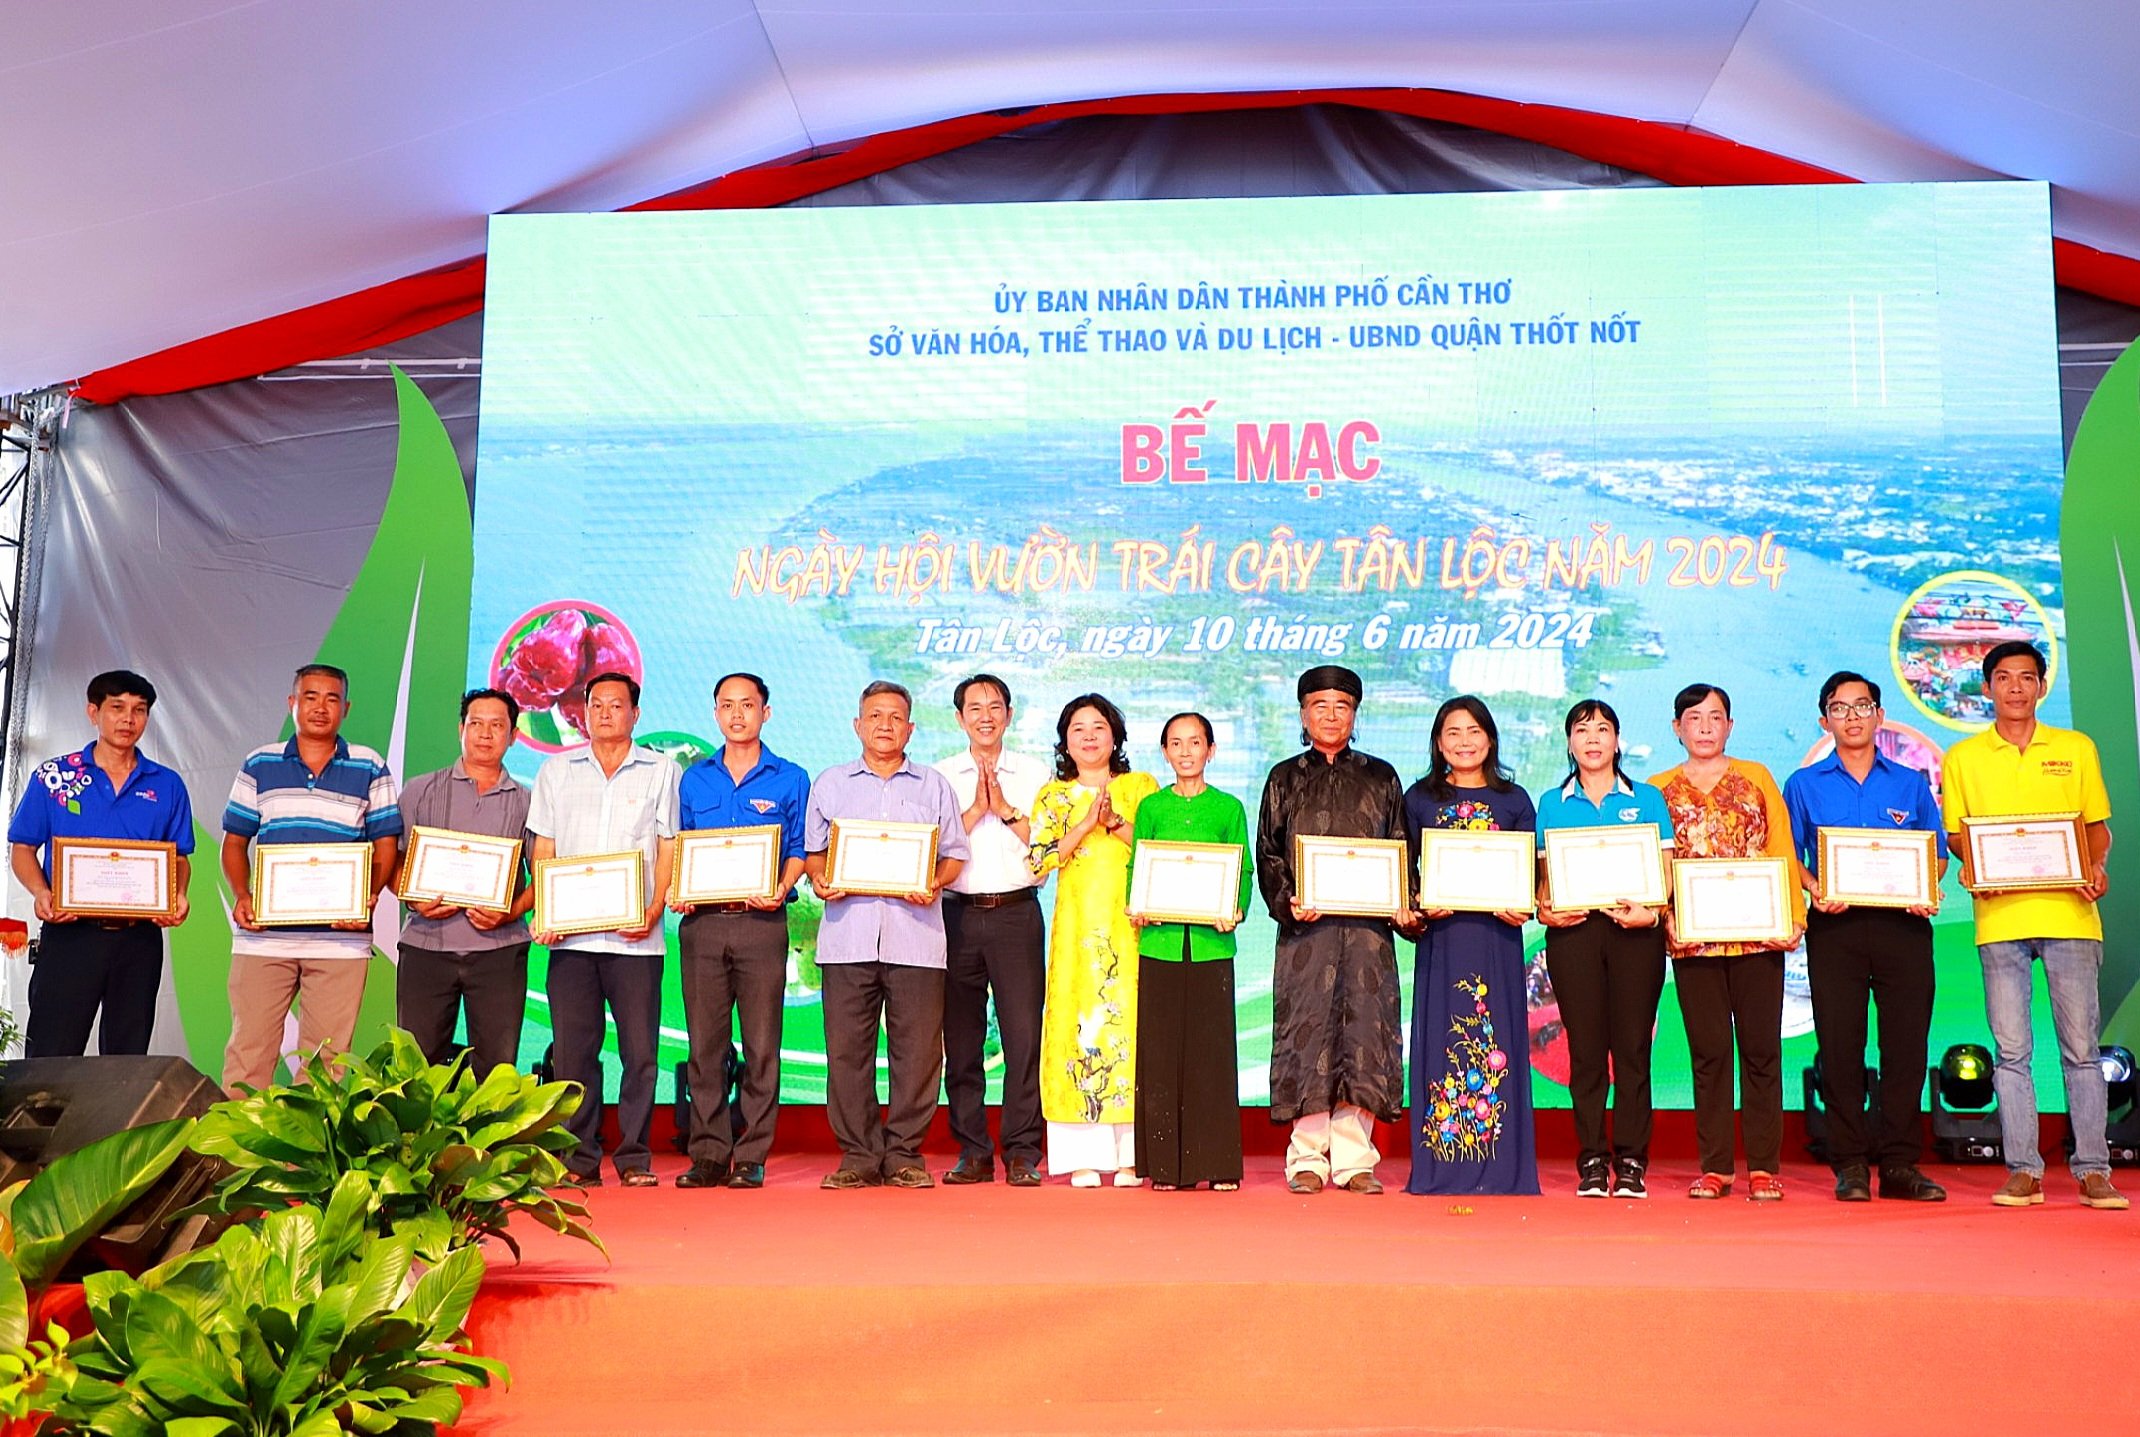 Bà Lê Thị Thúy Hằng – Phó Chủ tịch UBND quận Thốt Nốt trao tặng giấy khen cho các đơn vị tham gia ngày hội.